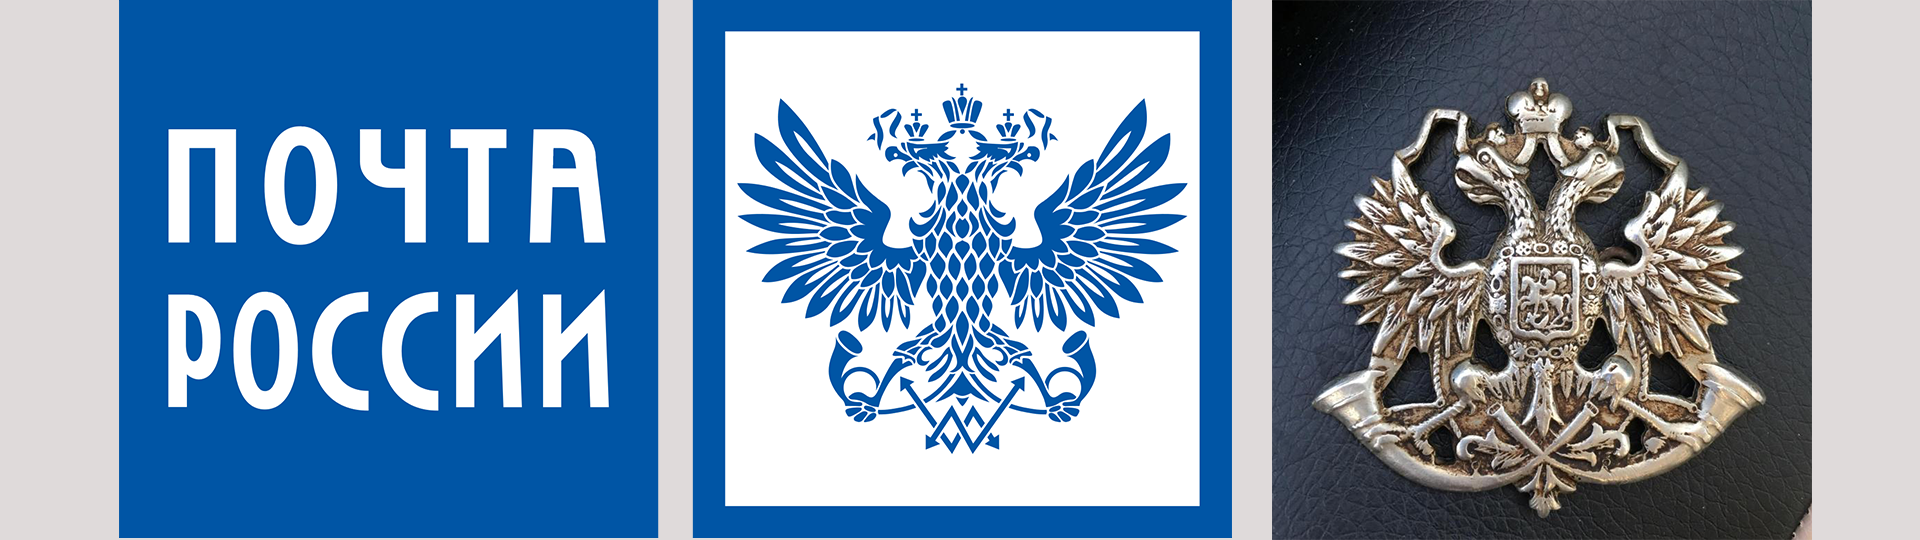 Почта России логотип и герб.